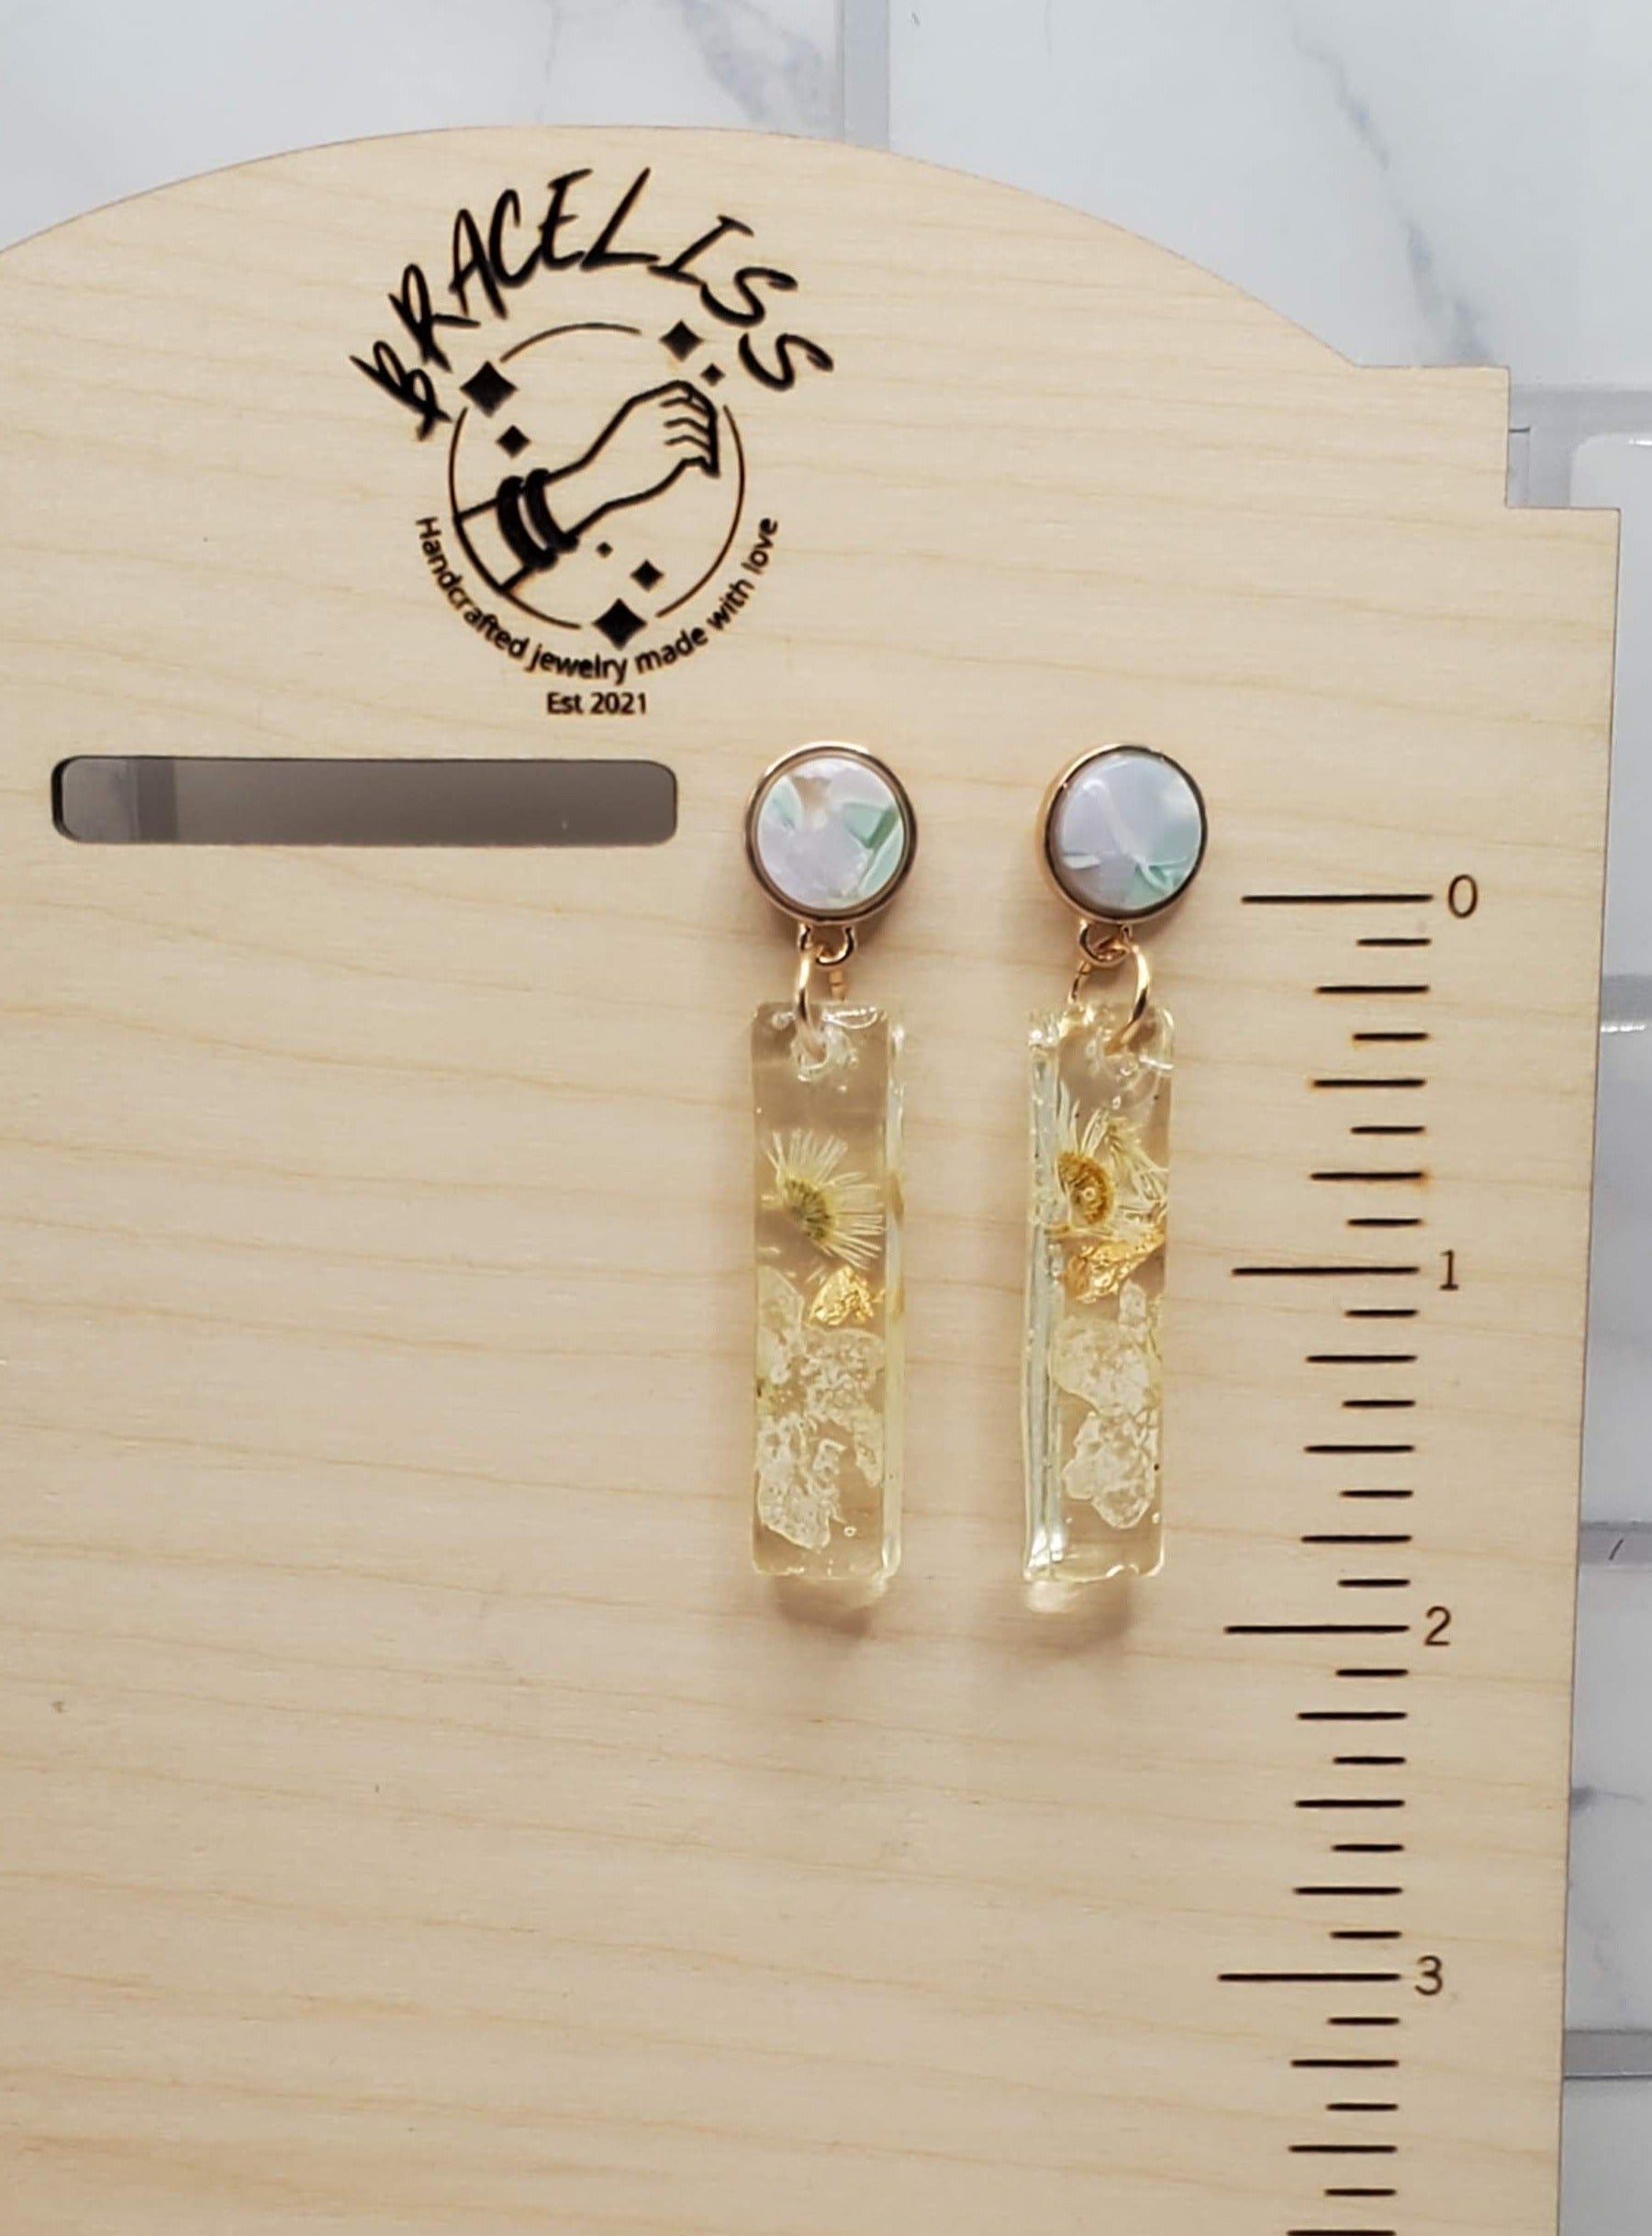 White floral bar earrings - pressed flower resin earrings on display - Braceliss